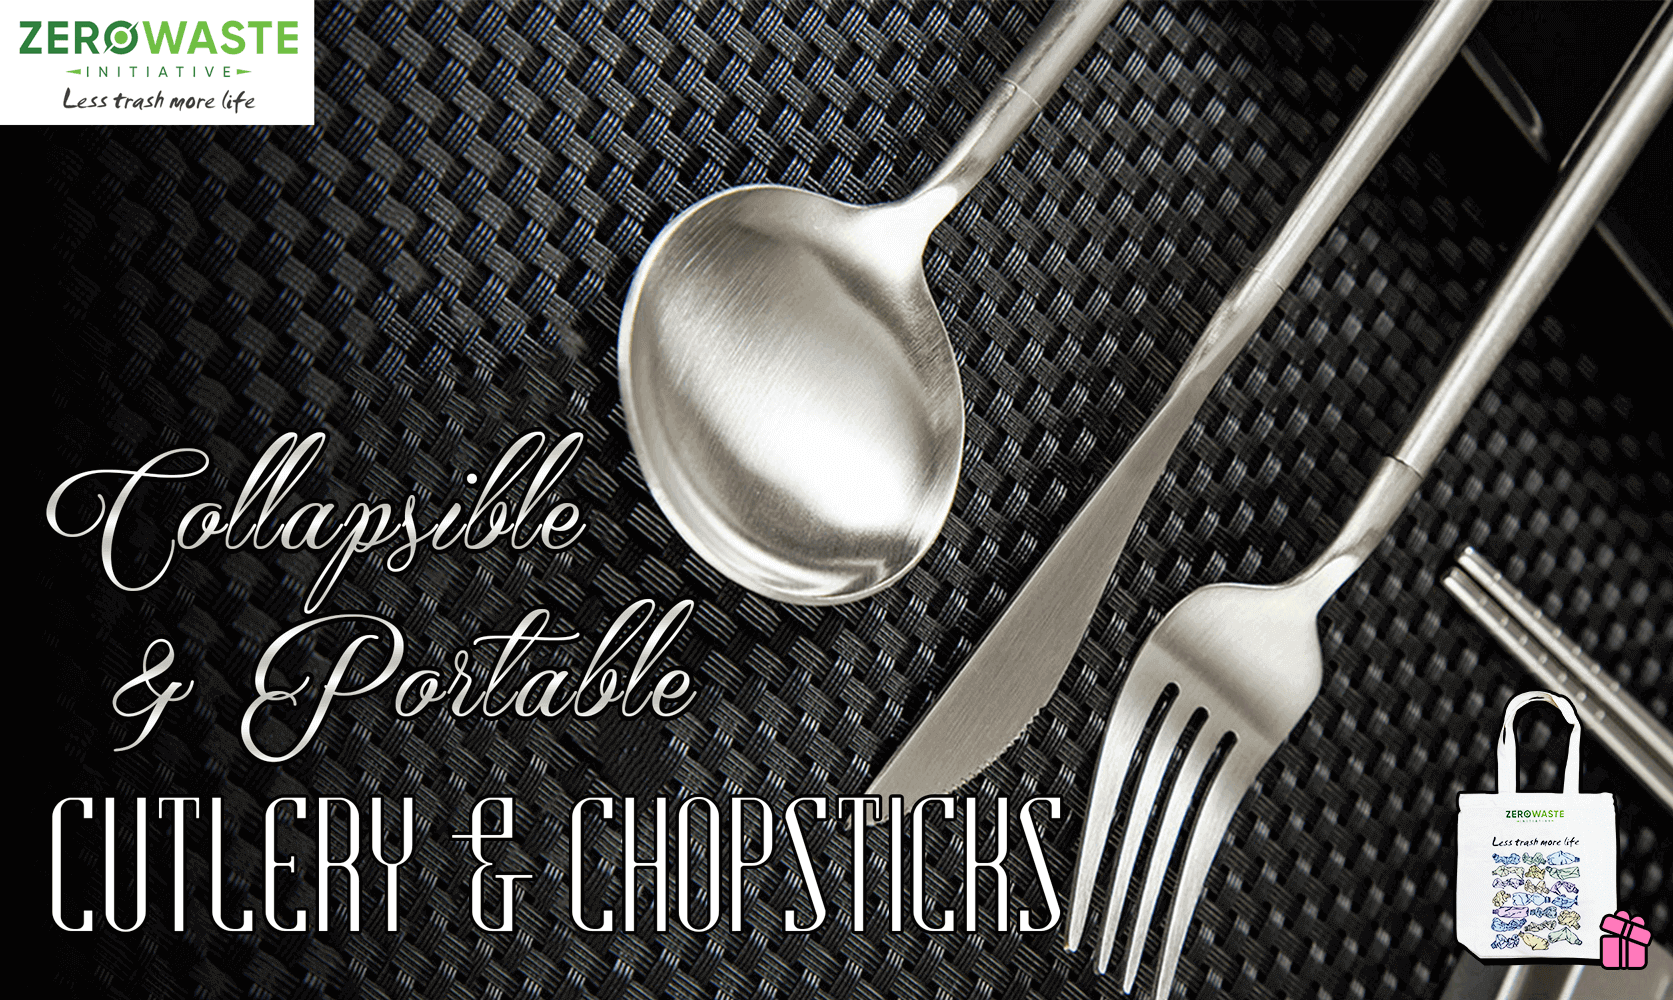 Zero Waste cutlery chopsticks